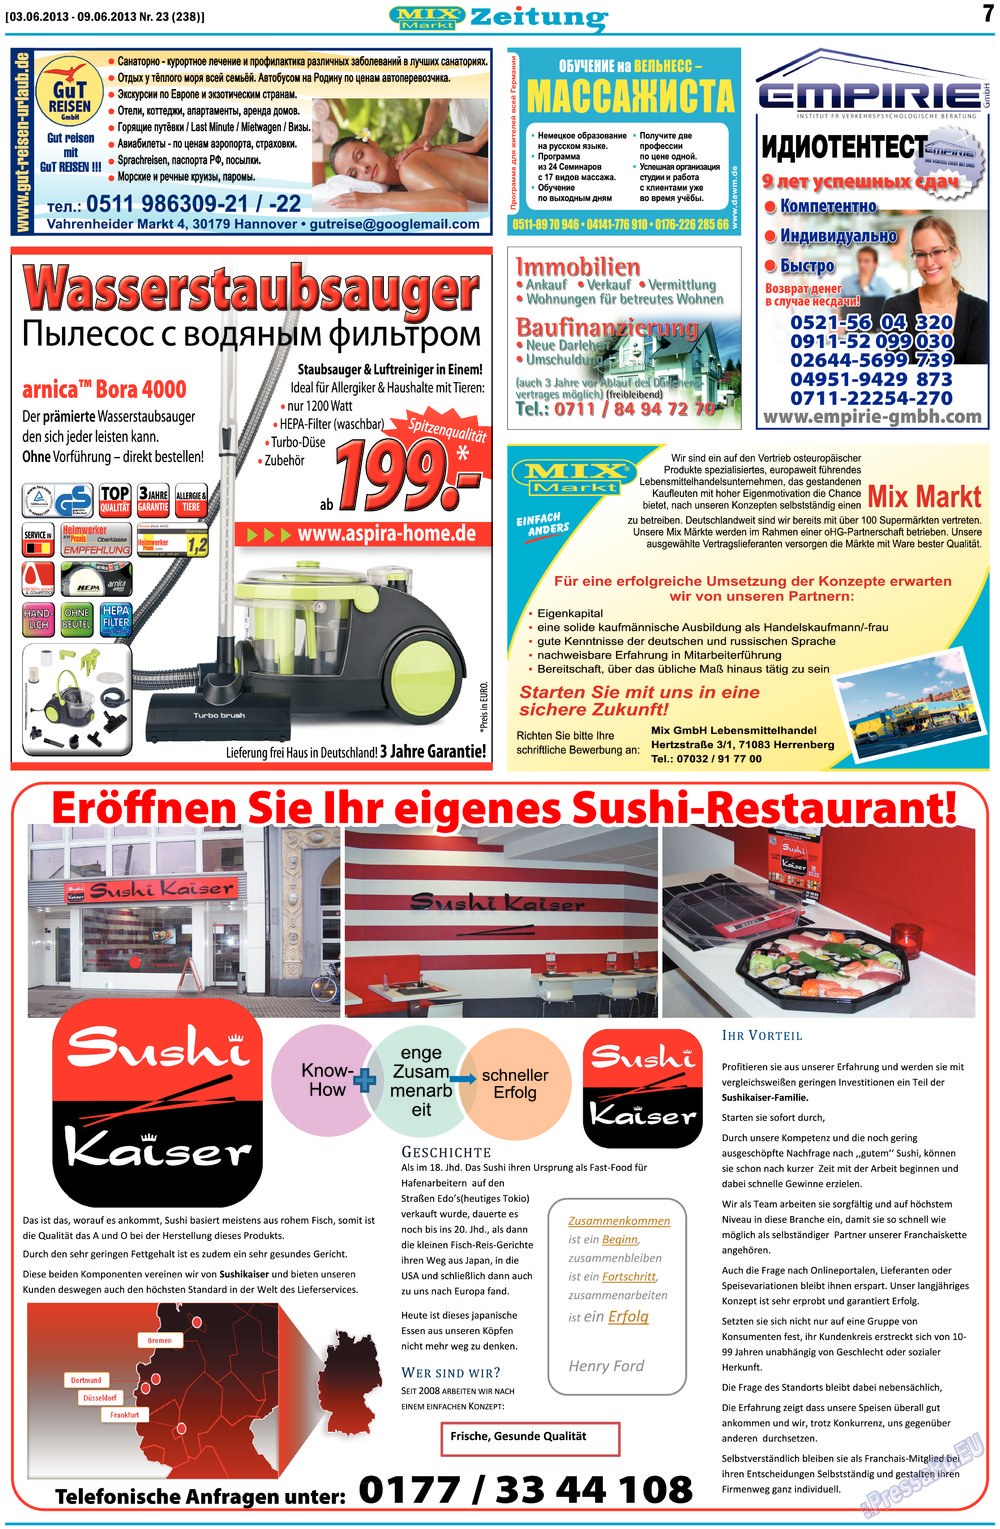 MIX-Markt Zeitung (газета). 2013 год, номер 23, стр. 7